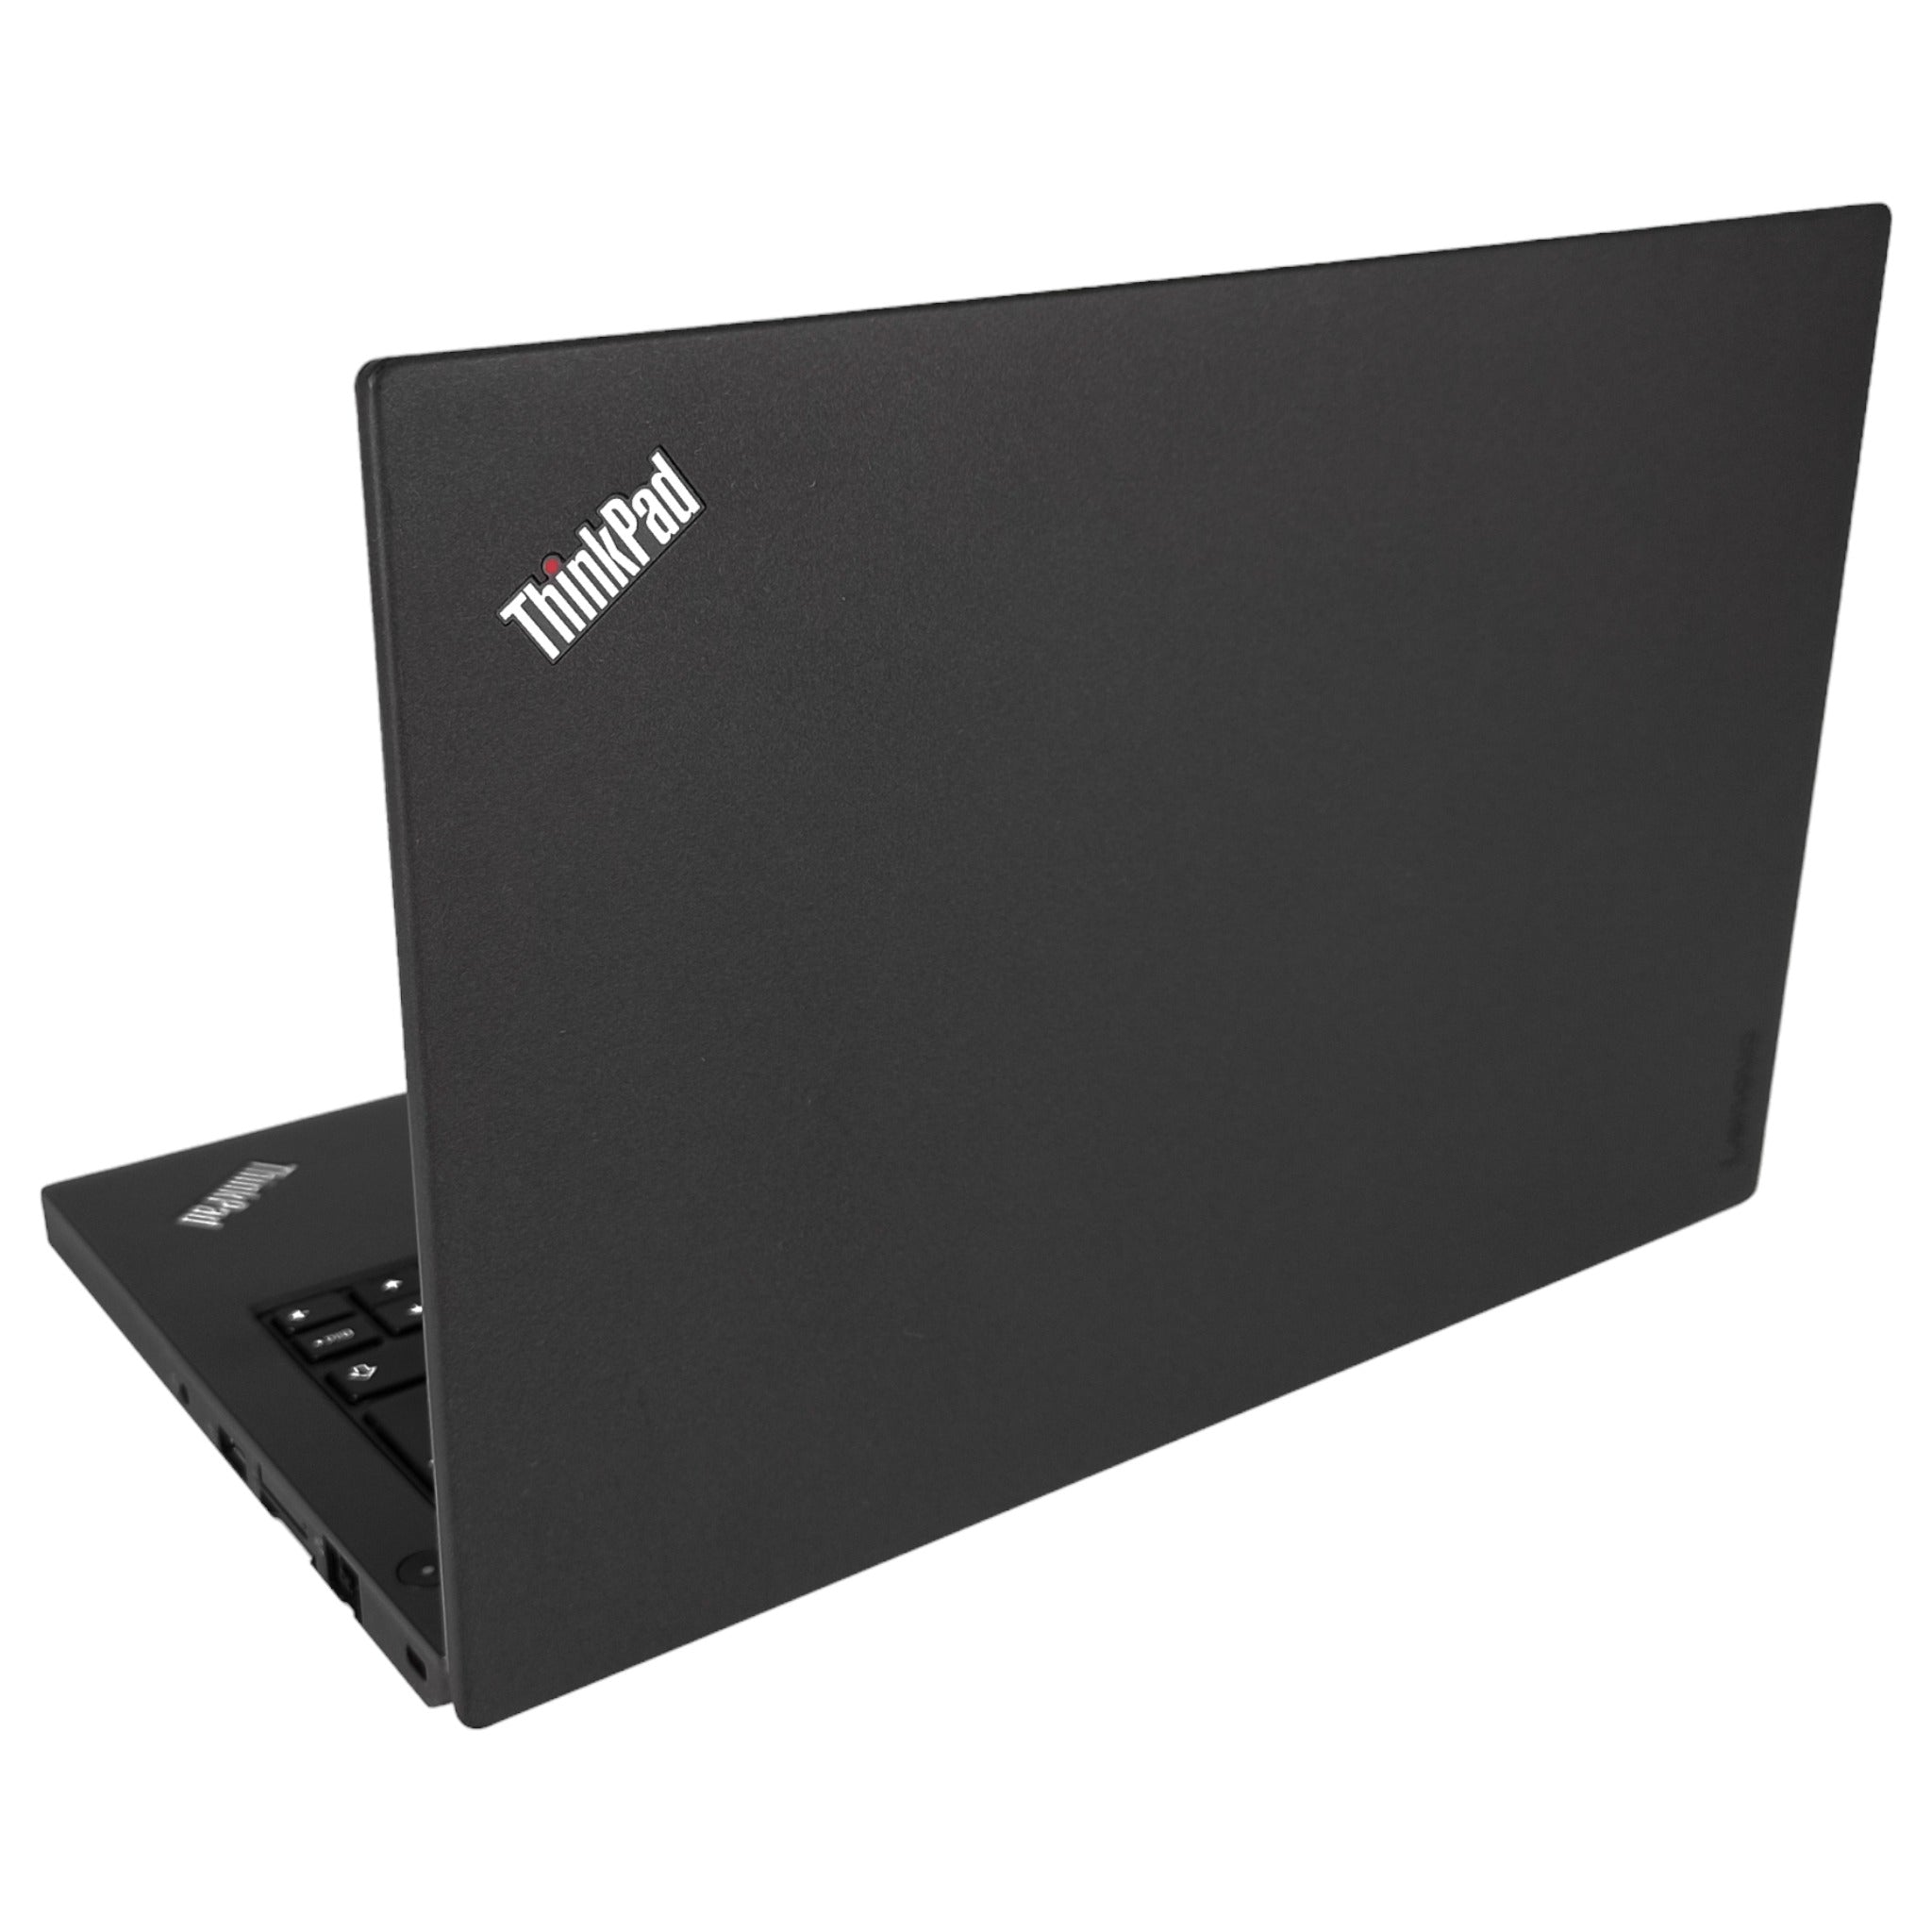 Lenovo ThinkPad X260 12,5" | i7-6600U | 8 GB | 256 GB SSD | HD | Win 10 Pro - computify